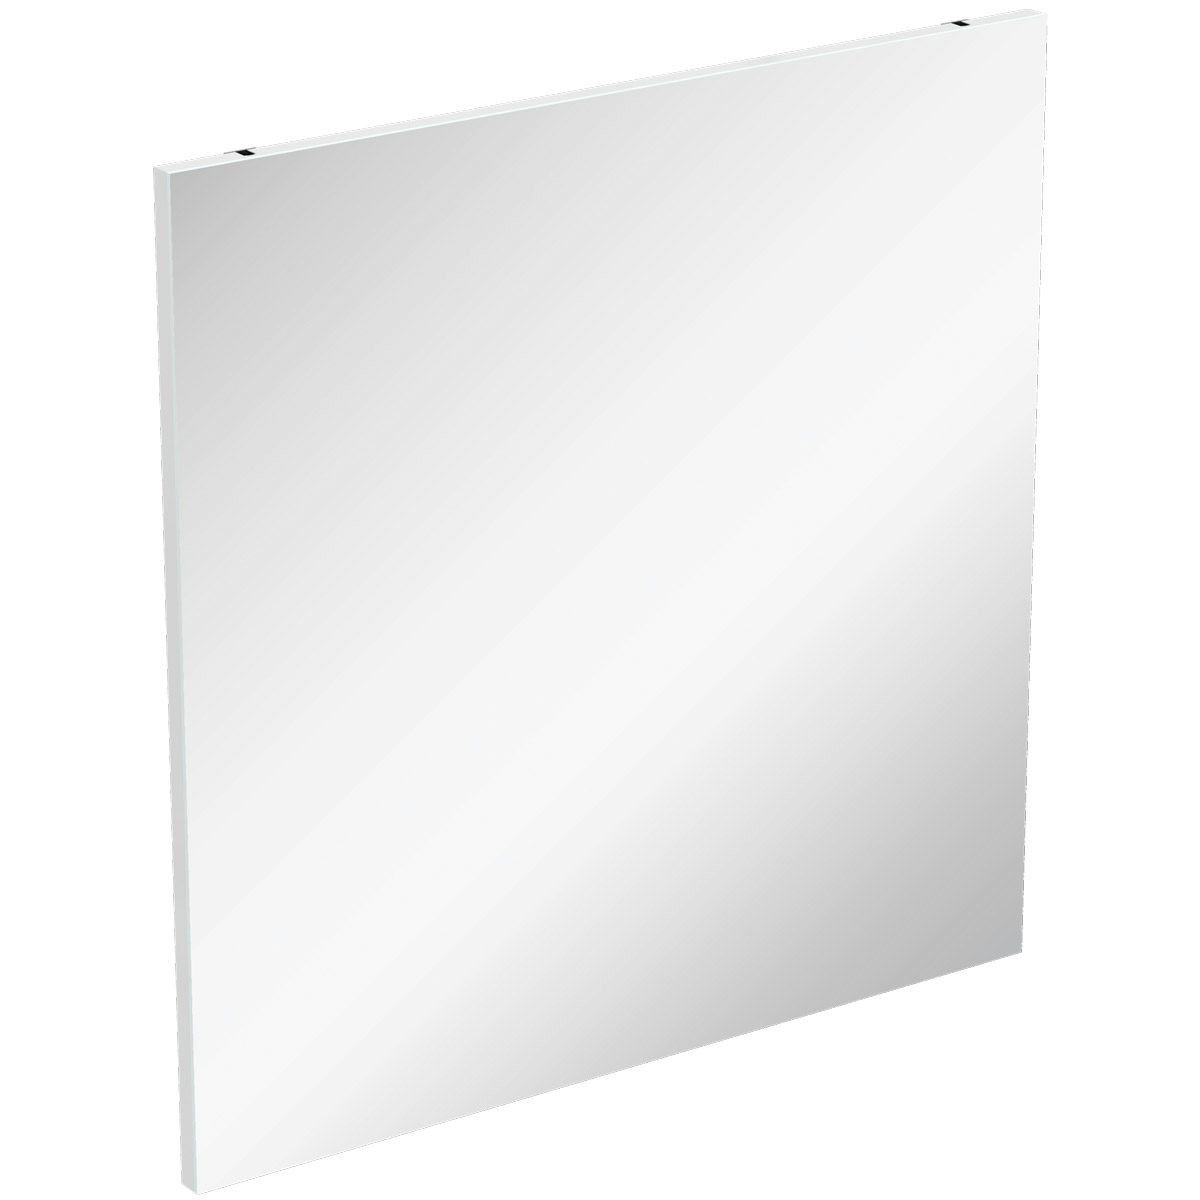 Ideal Standard Connect Air bathroom mirror 700 x 700mm